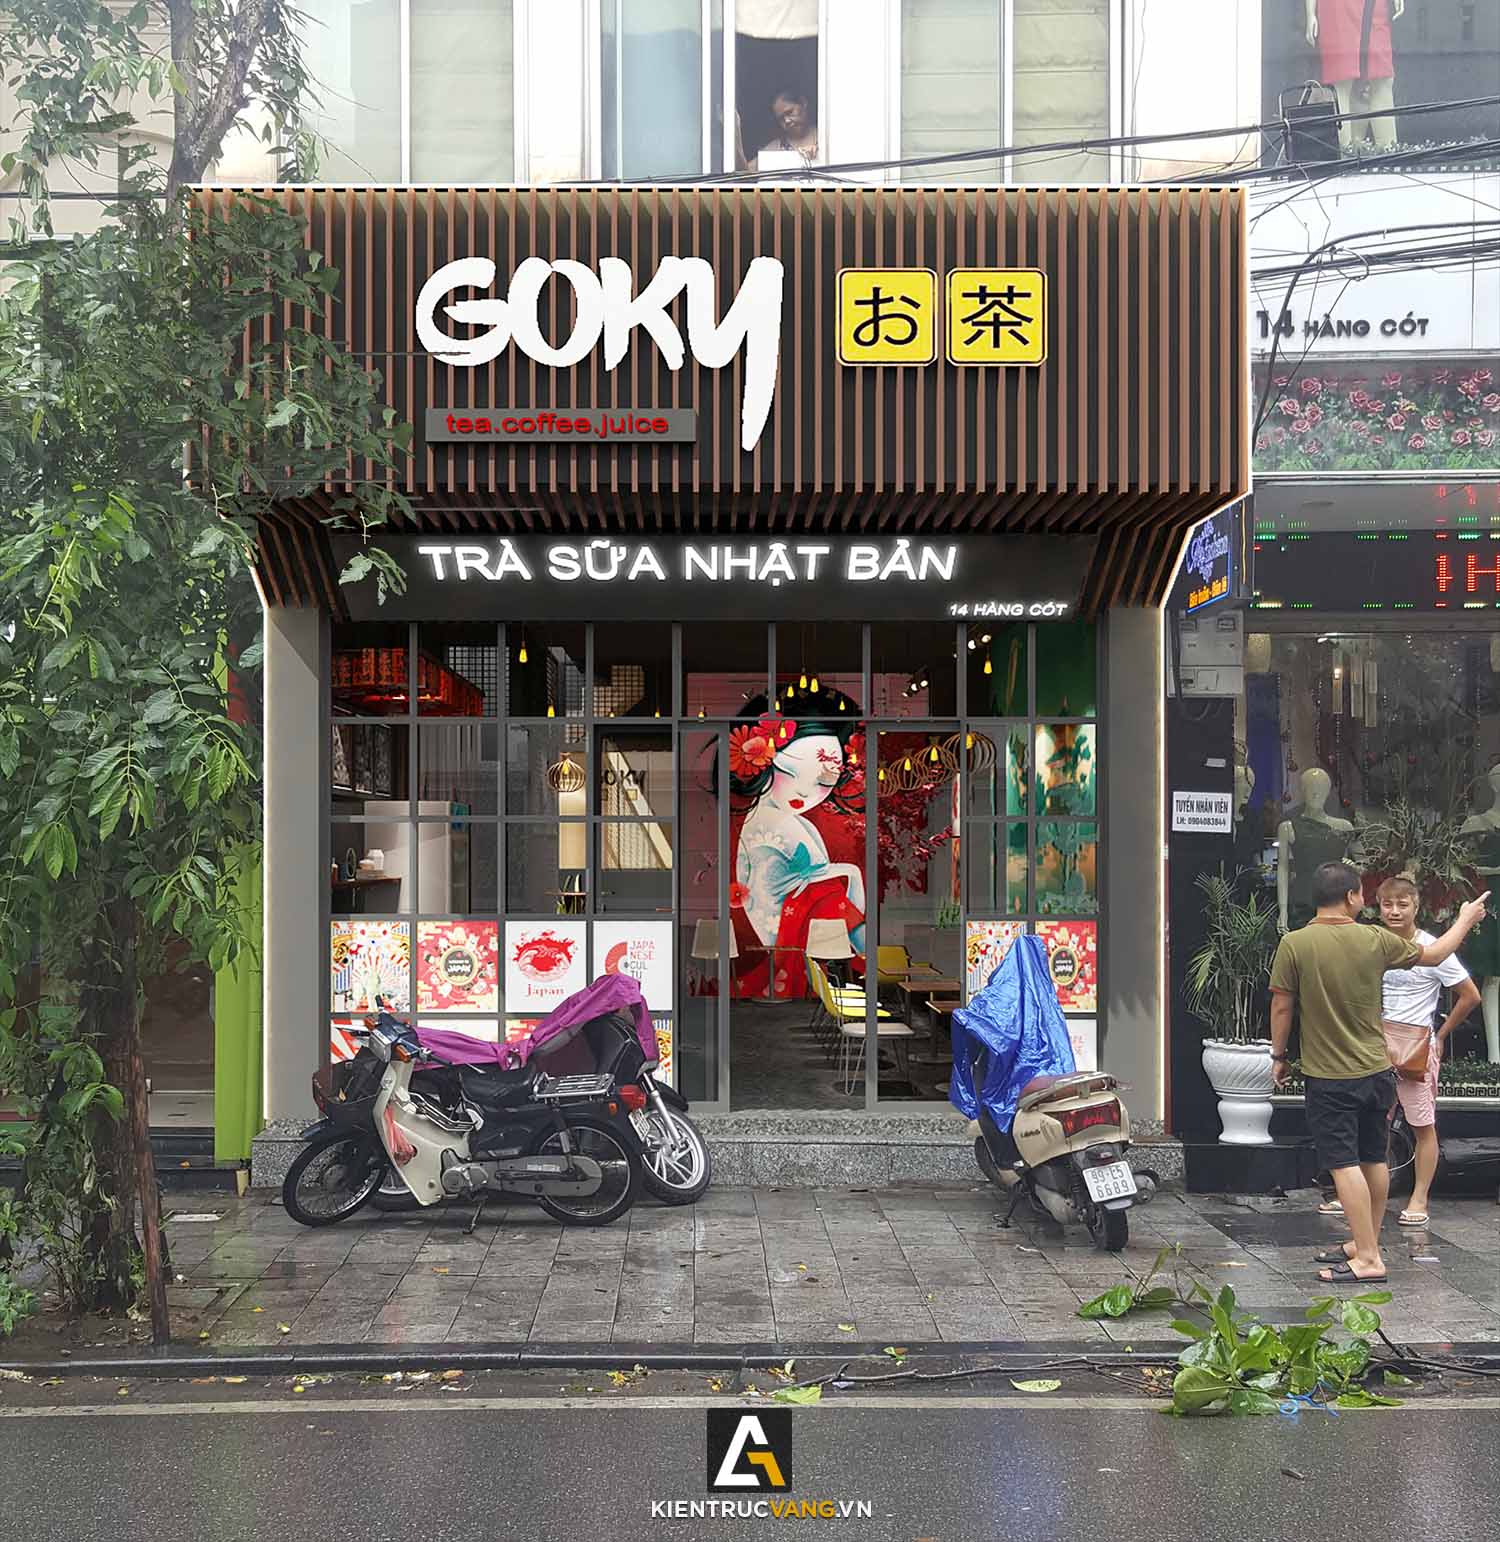 Thiết kế nội thất Cafe tại Hà Nội Thiết Kế Quán Trà Sữa Goky, Chi Nhánh Hàng Cót 1617414090 1